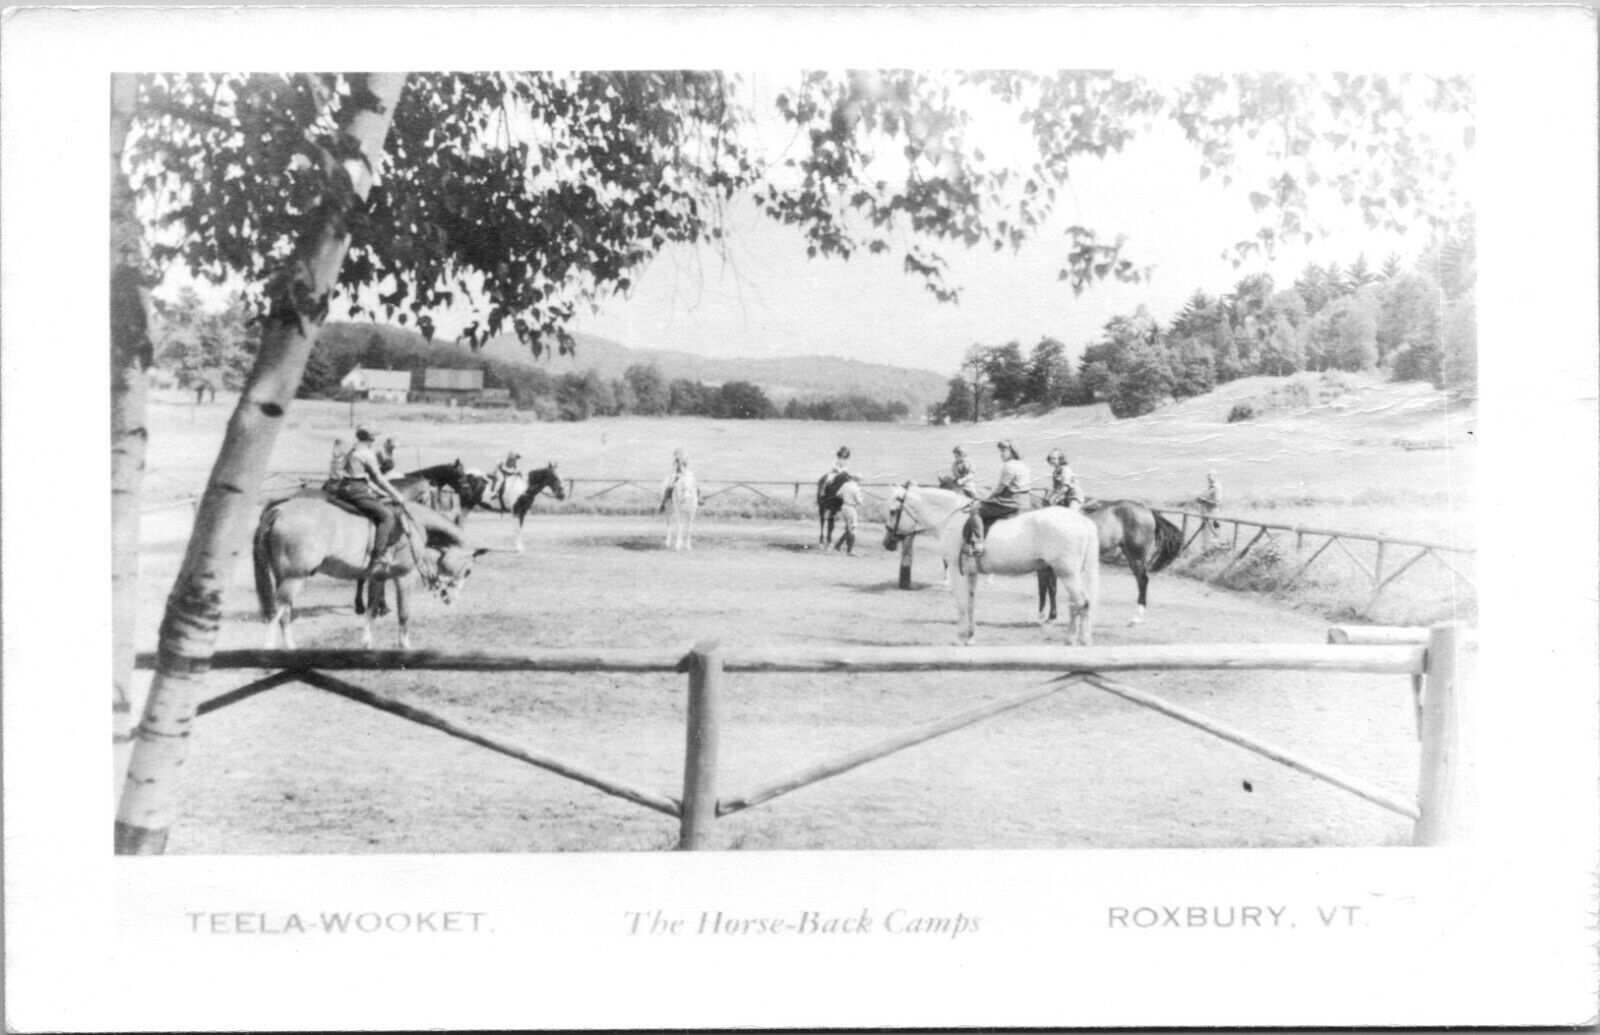 Roxbury VT Teela Wooket,The Horseback Camps